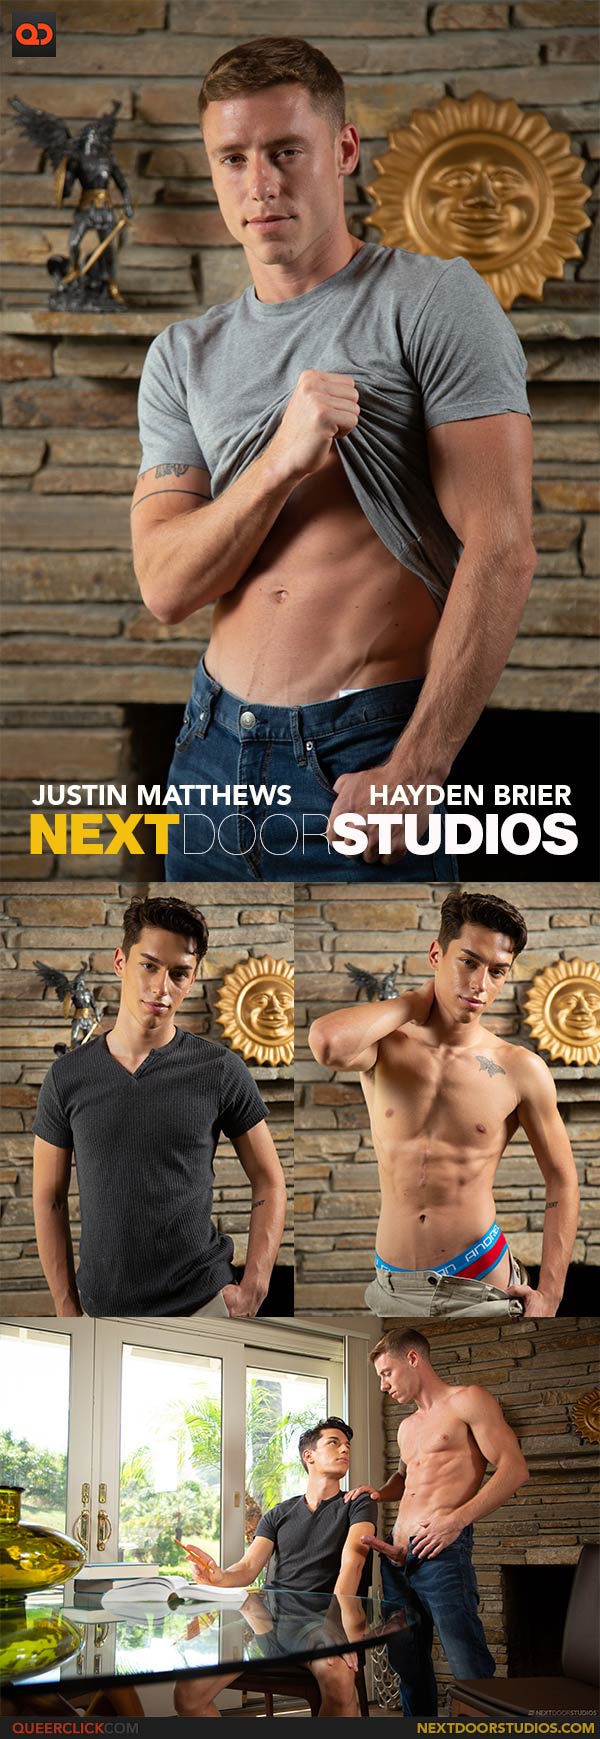 Next Door Studios:  Justin Matthews and Hayden Brier